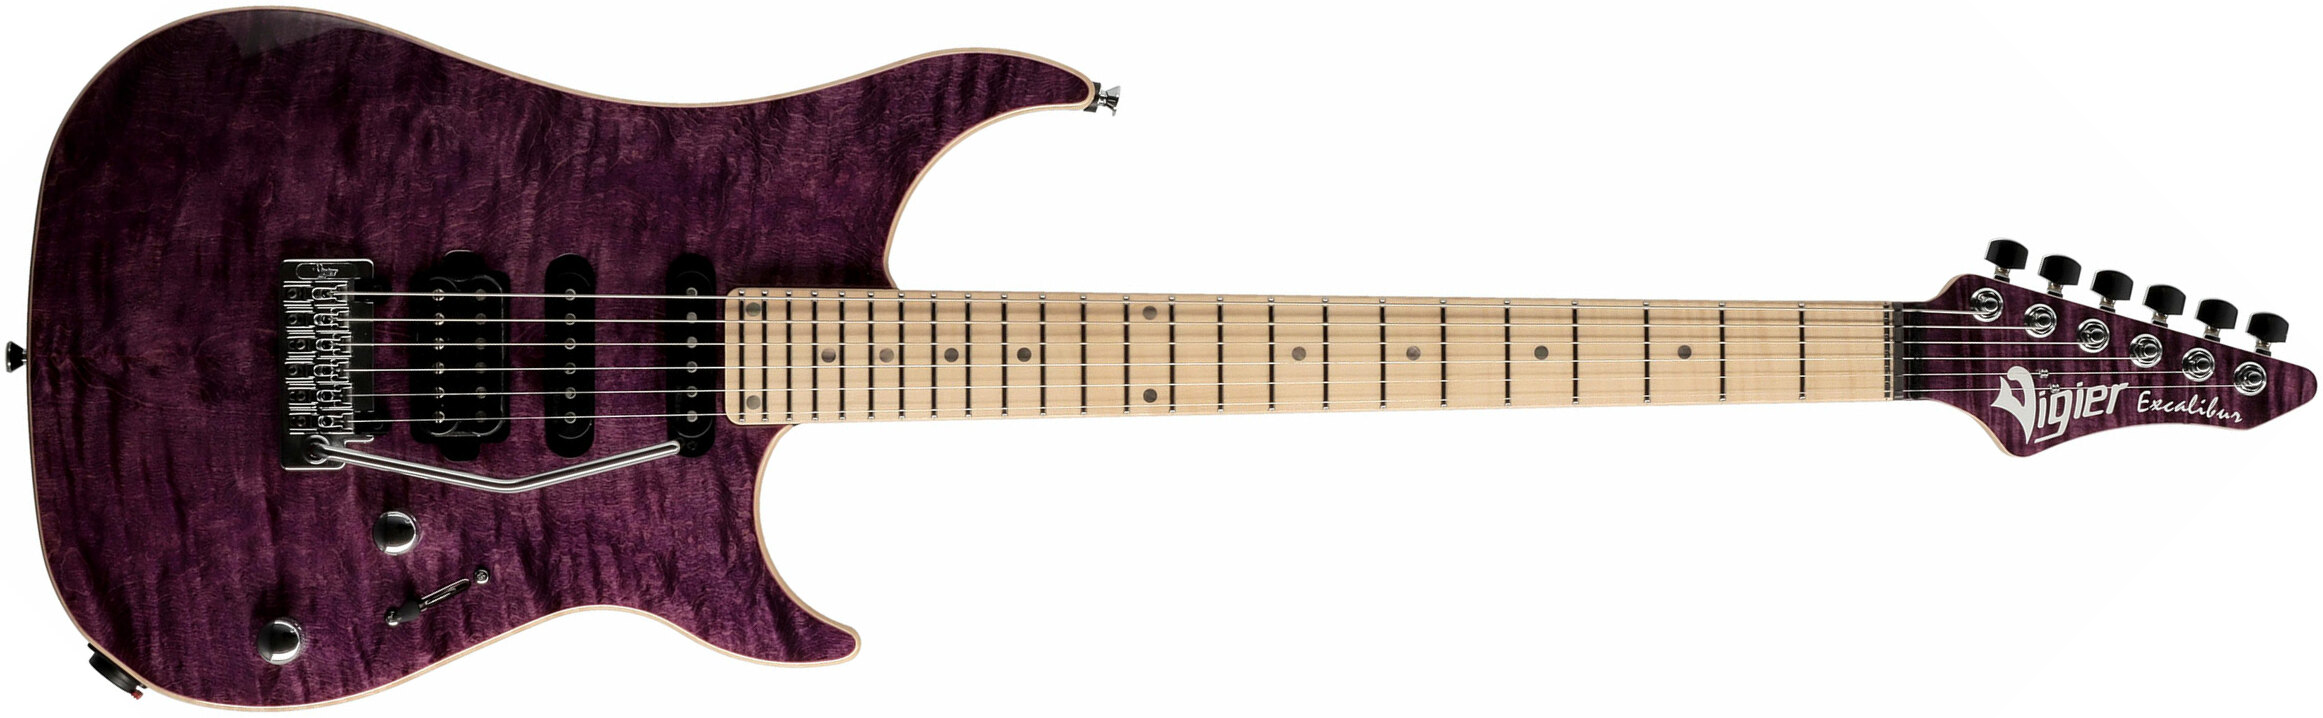 Vigier Excalibur Ultra Blues Hss Trem Mn - Amethyst Purple - Str shape electric guitar - Main picture